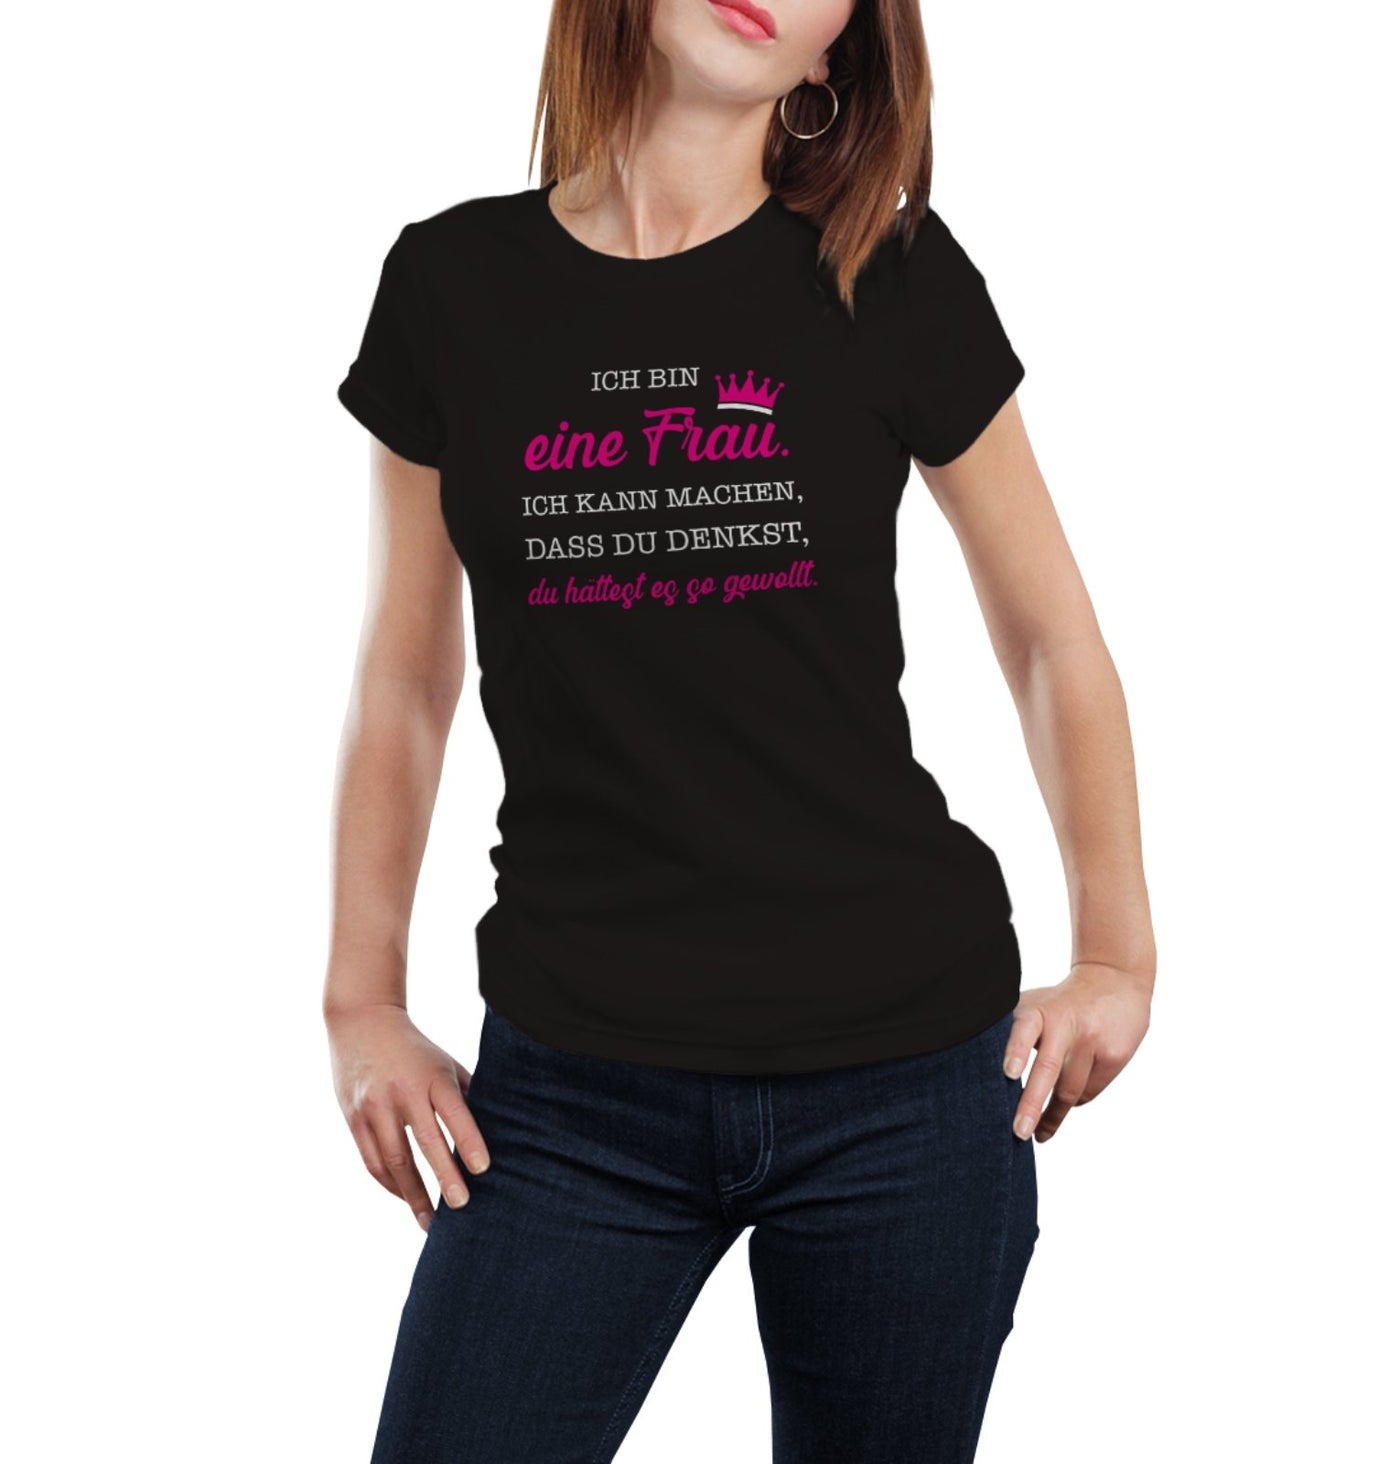 Bild: T-Shirt - Ich bin eine Frau. Ich kann machen, dass du denkst, du hättest es so gewollt. Geschenkidee